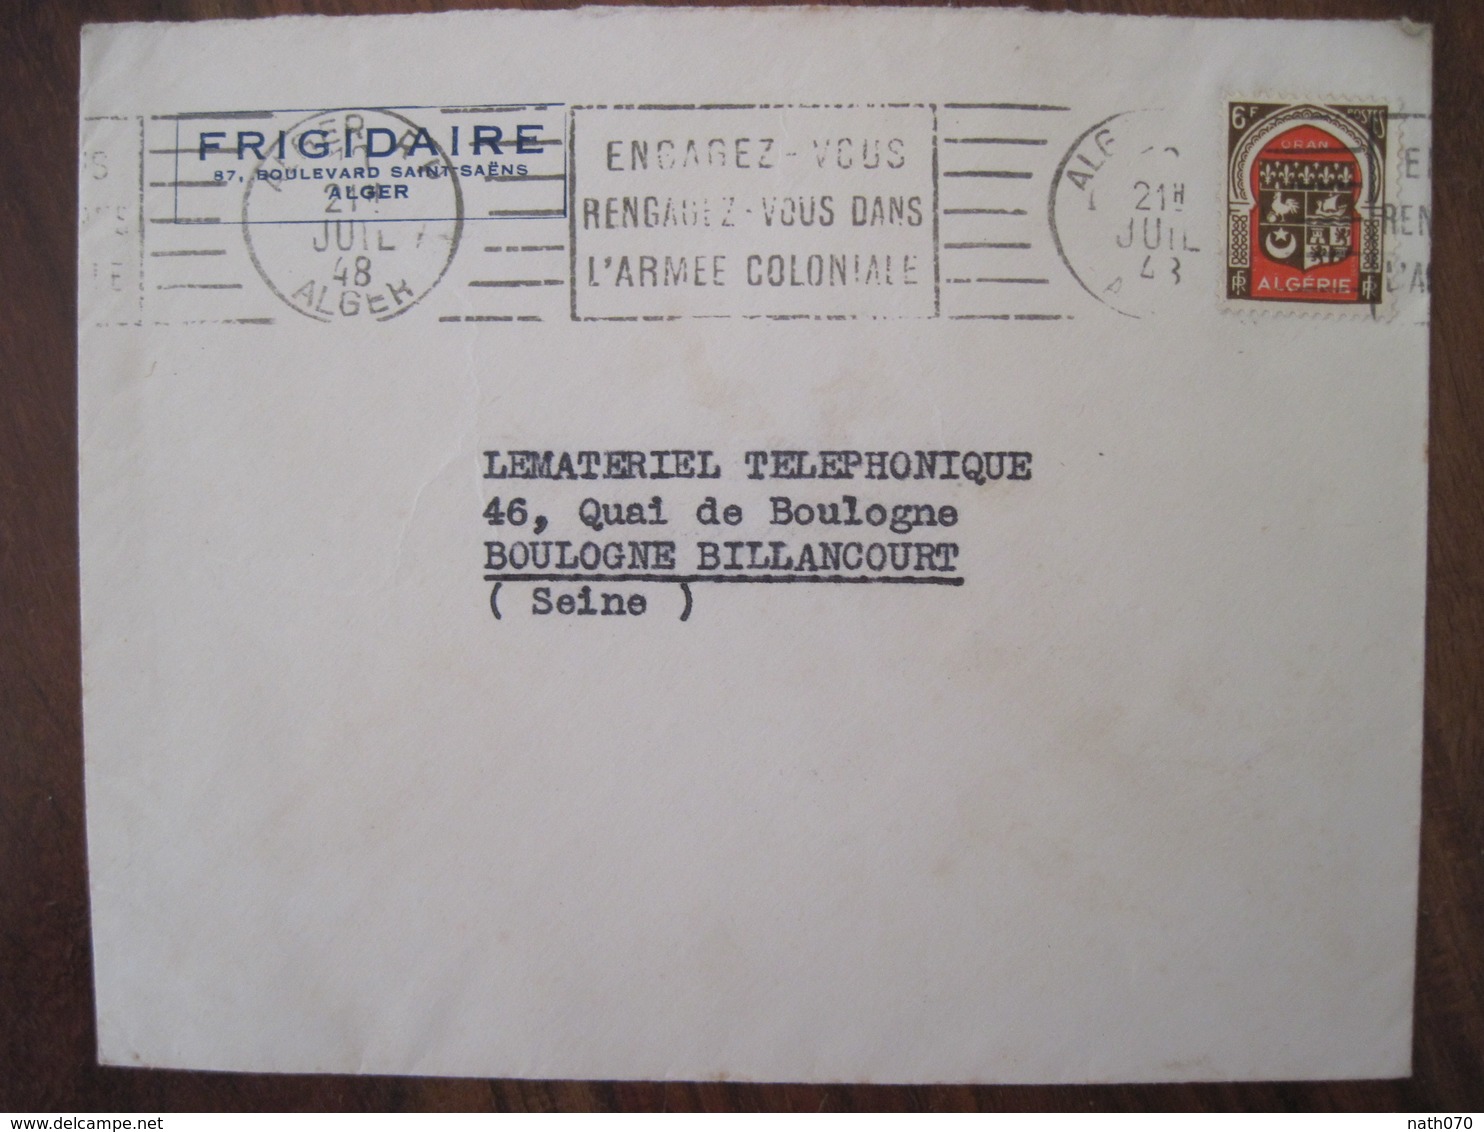 Algérie 1948 Publicité Frigidaire Engagez Vous Rengagez Vous Dans L'armée Coloniale Lettre Enveloppe Cover Colonie - Brieven En Documenten